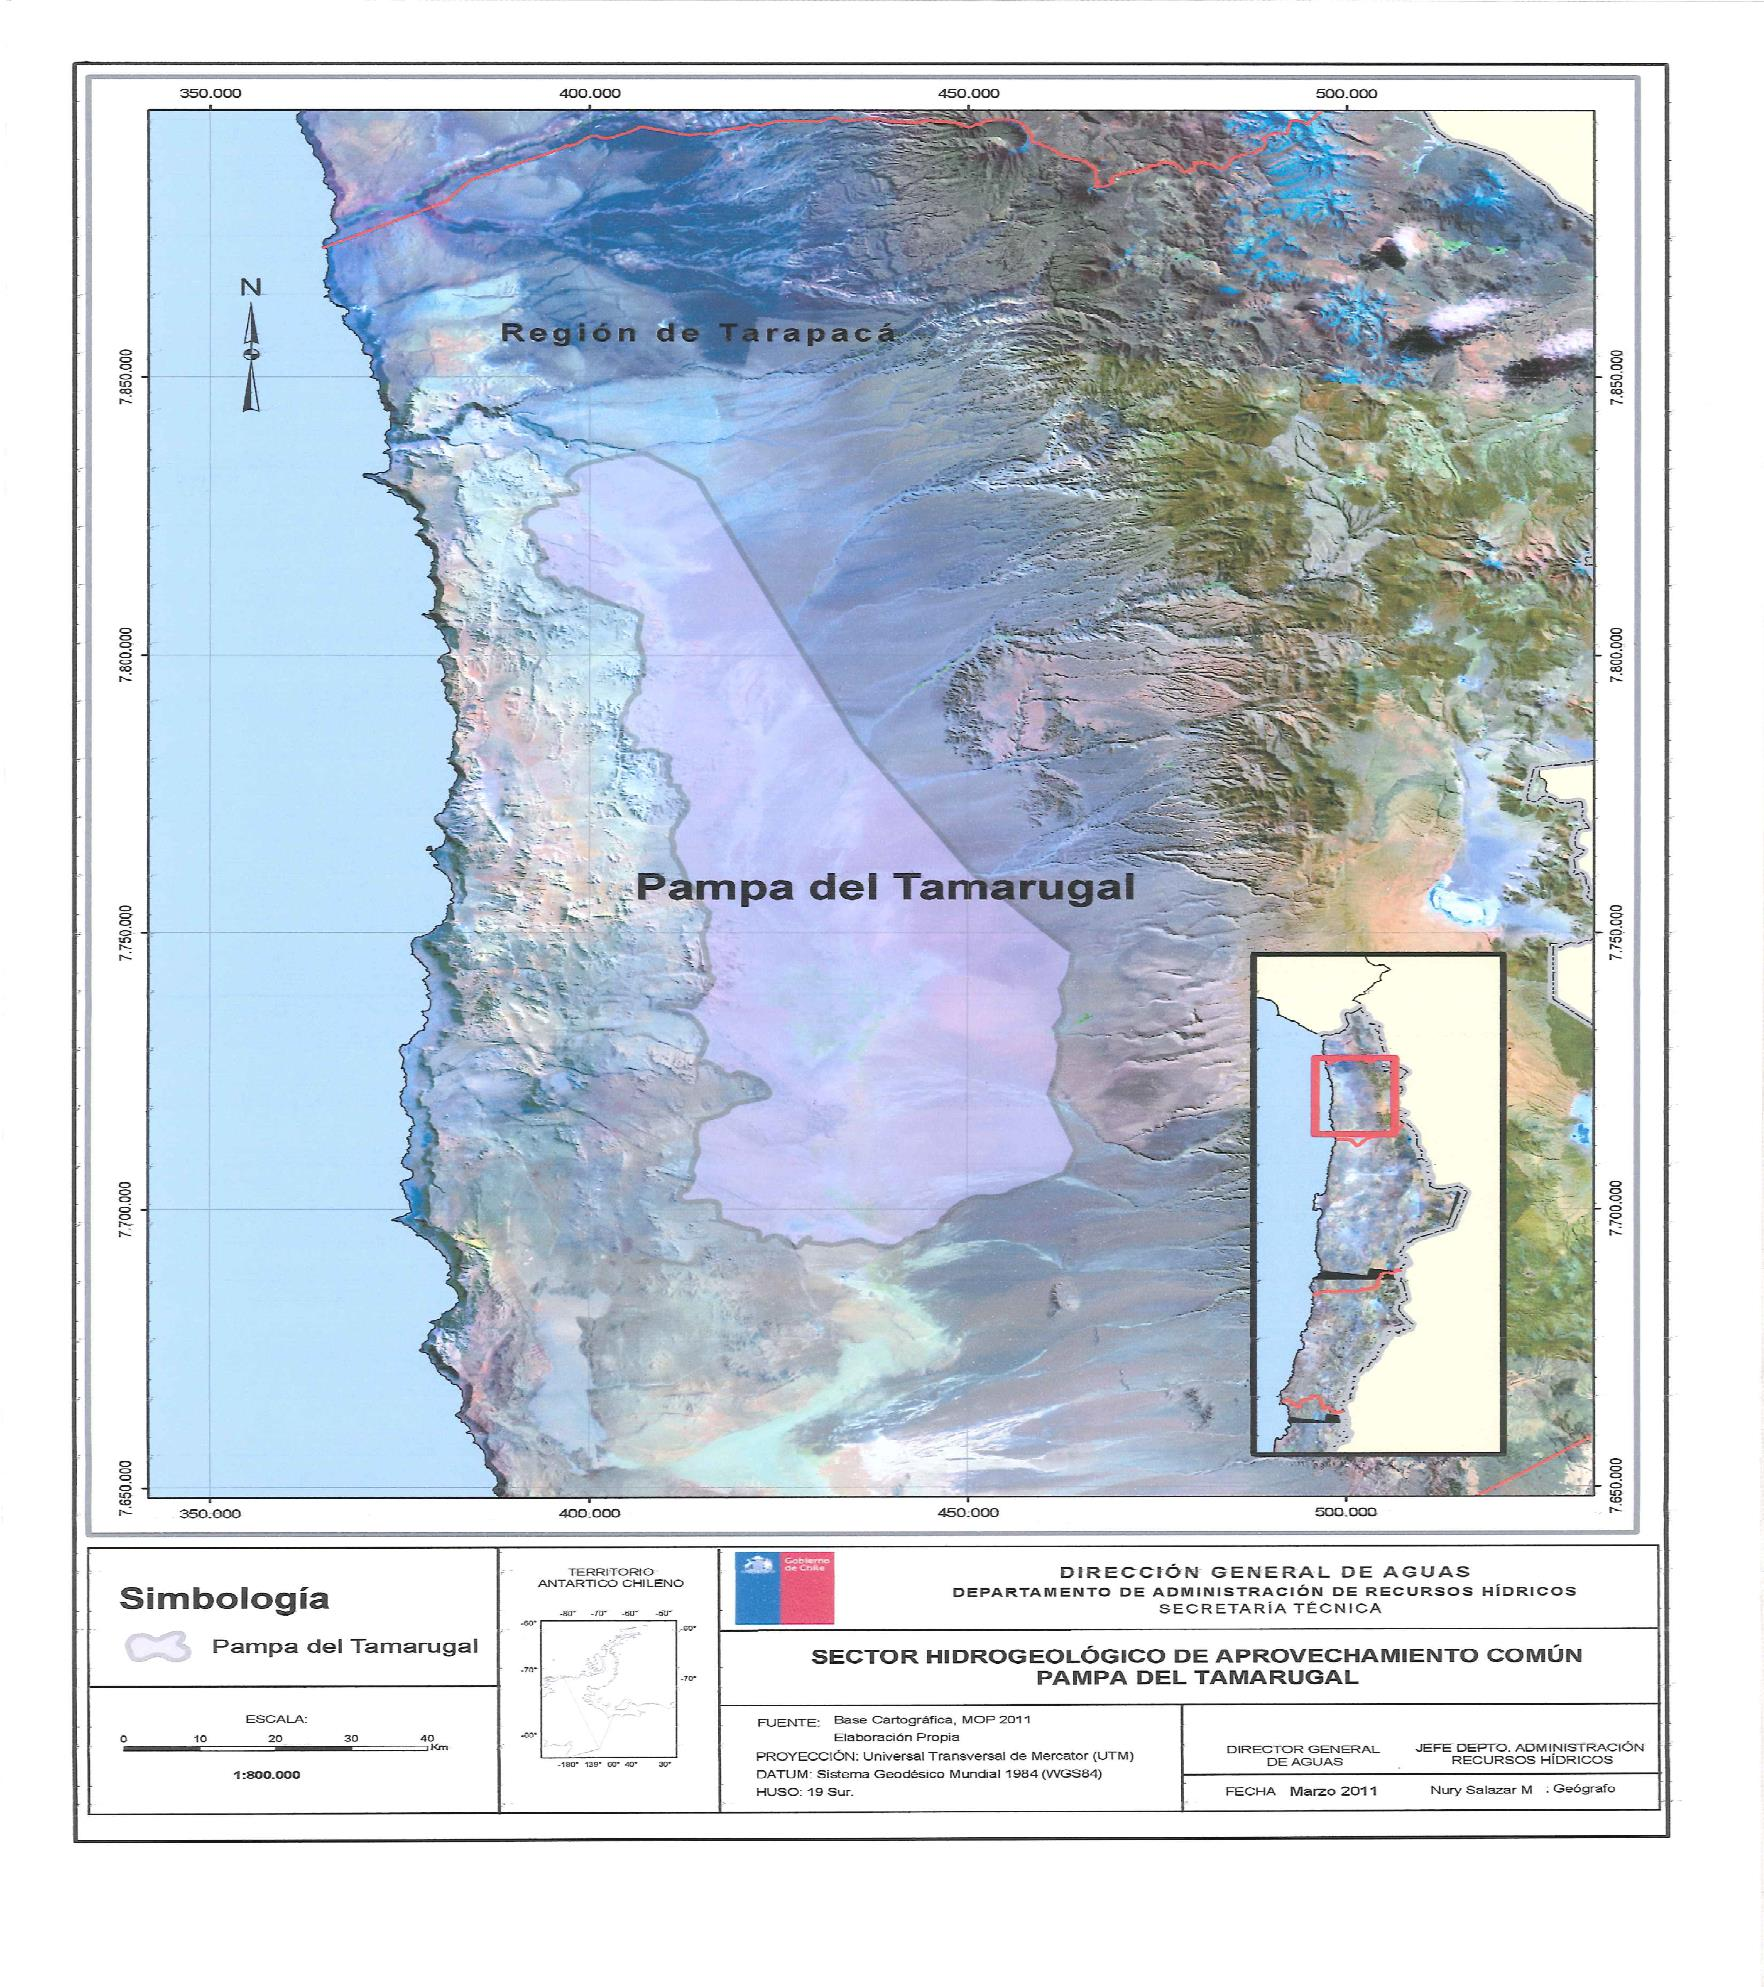 Alrededor de 23 quebradas descienden desde la precordillera andina hacia la pampa La cuenca Pampa del Tamarugal es una cuenca hidrográfica endorreica o cerrada debido a que no hay flujos